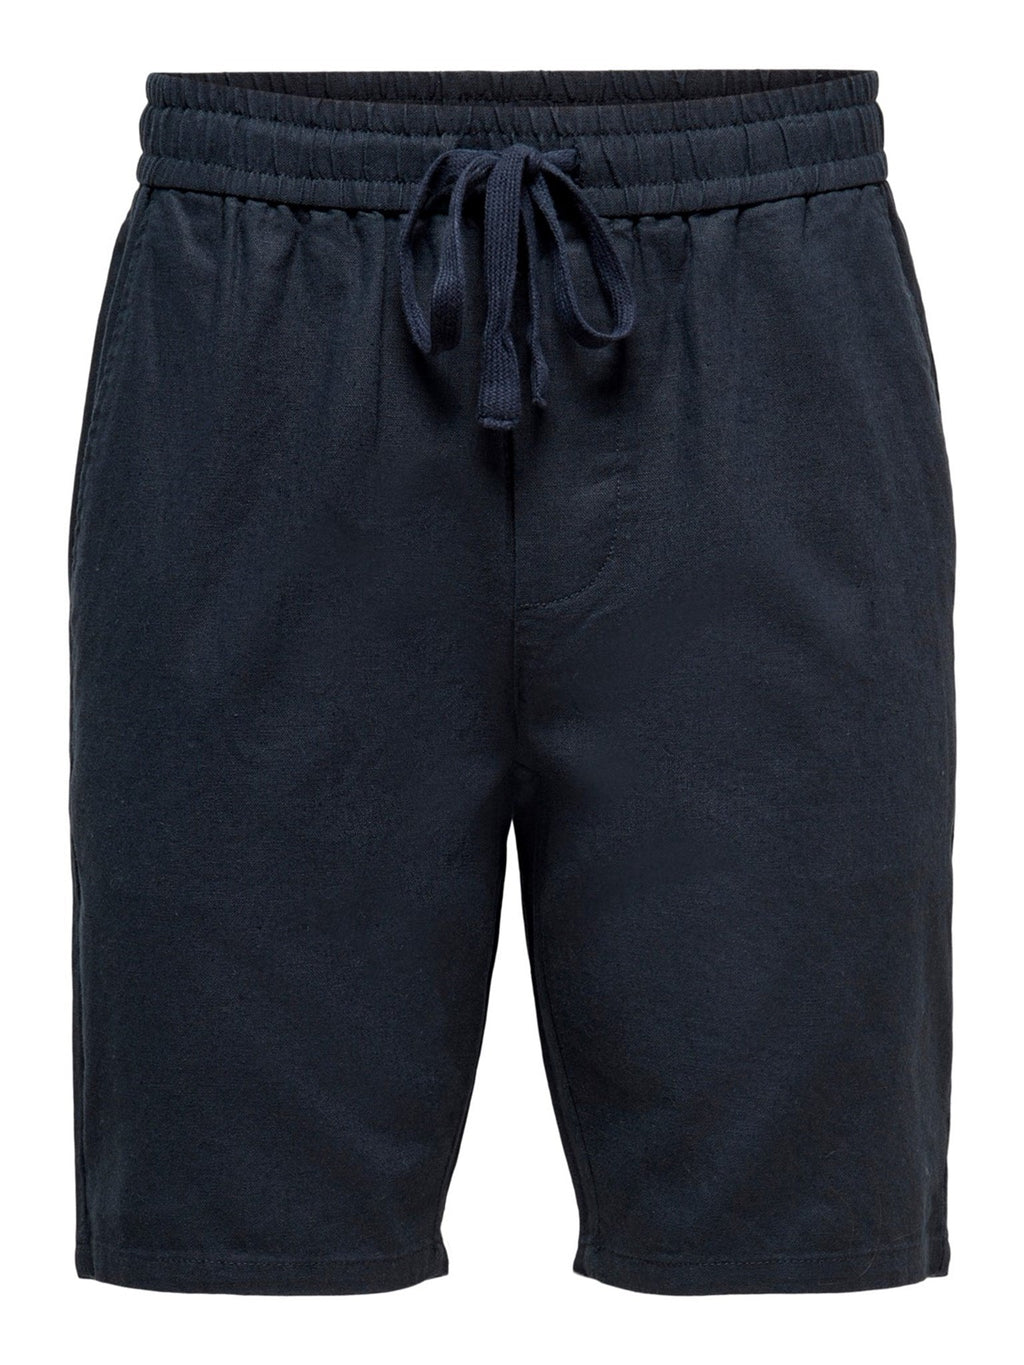 Linus亚麻短裤 - 深海海军